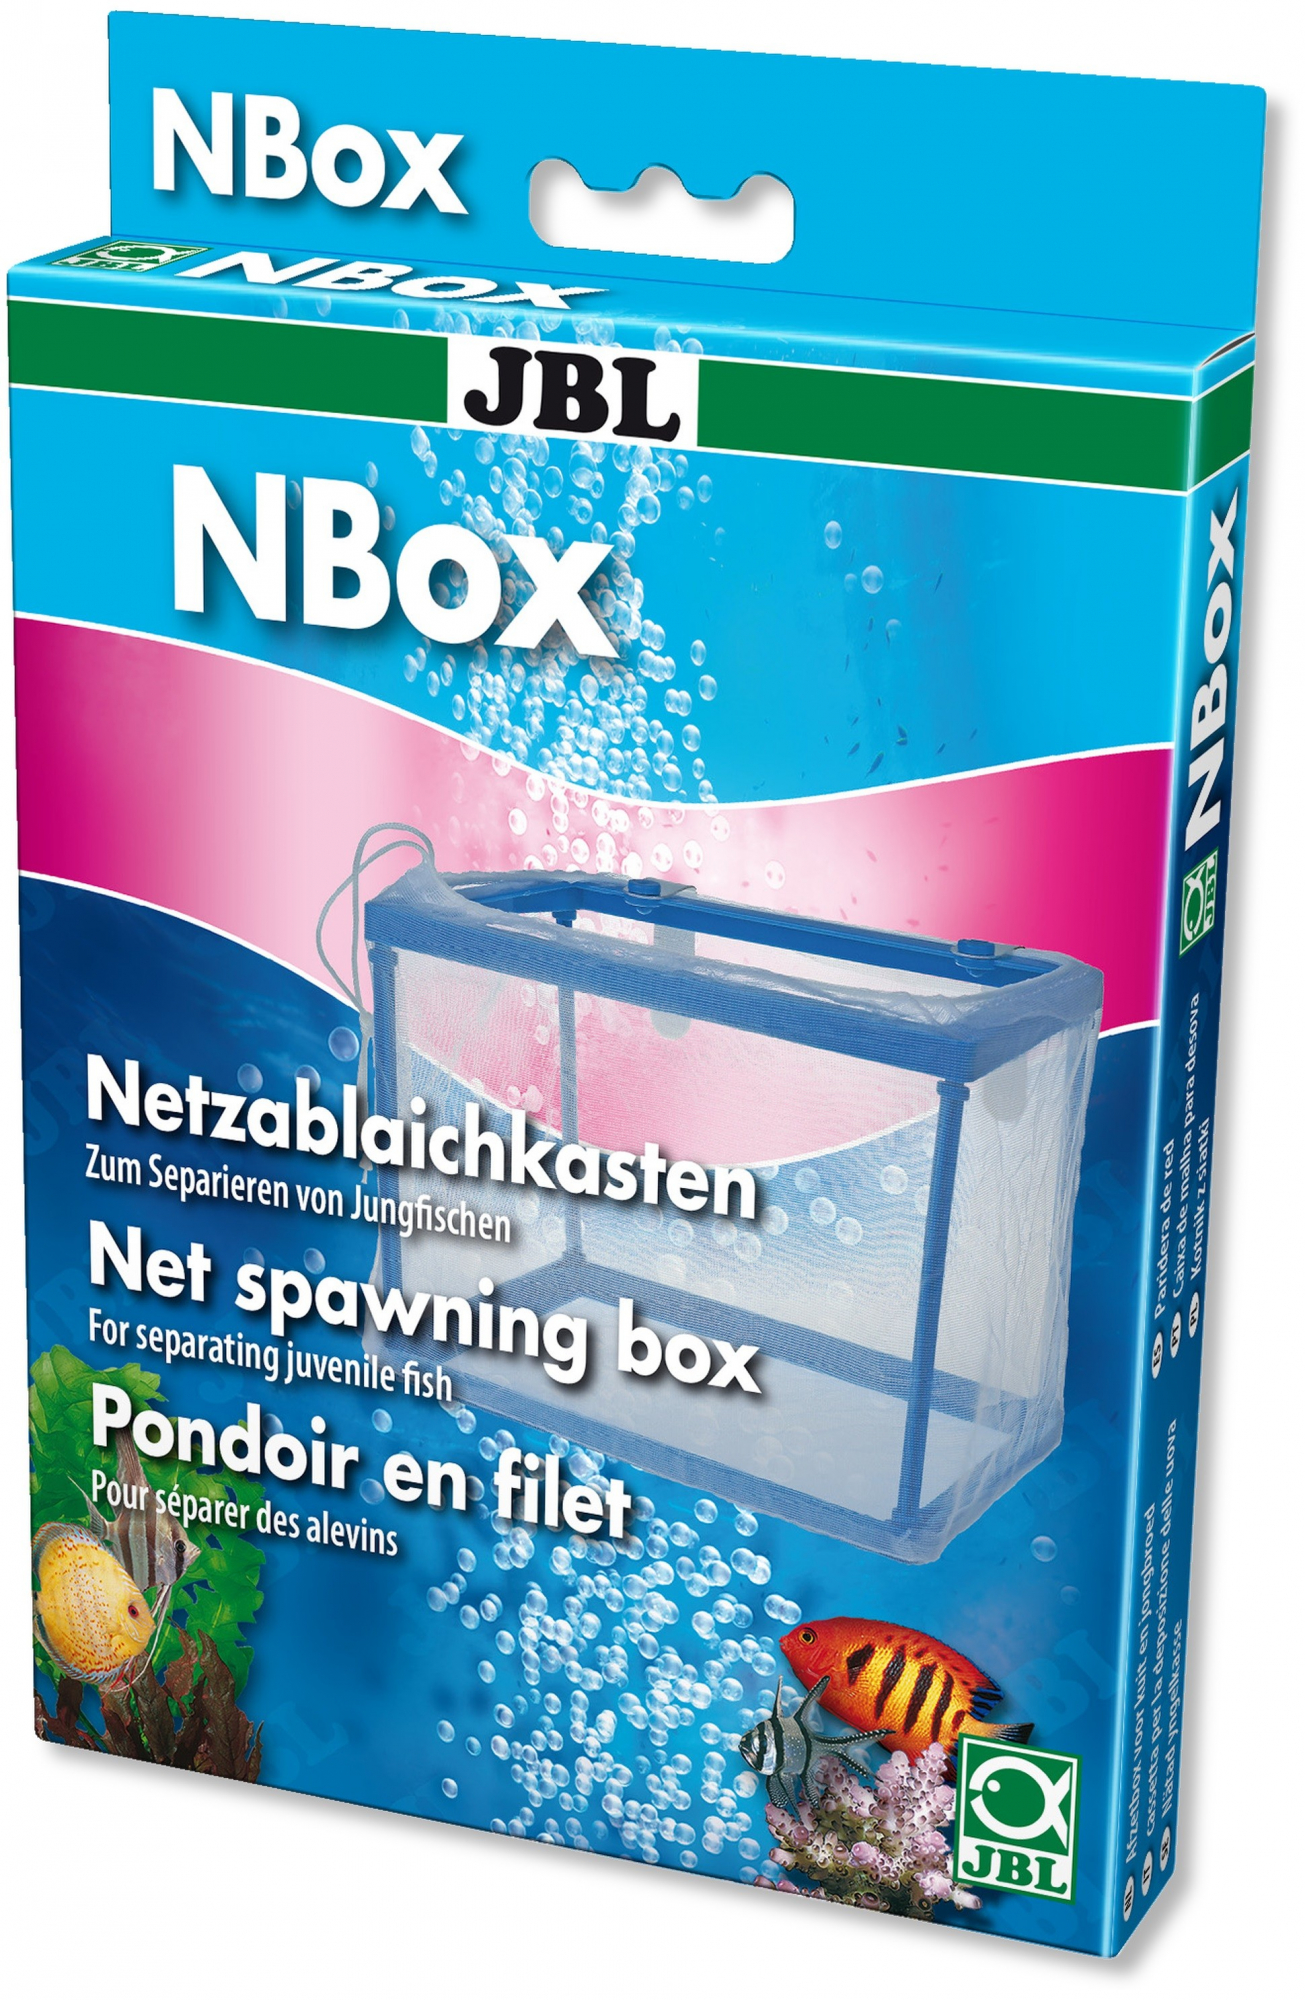 JBL Nbox